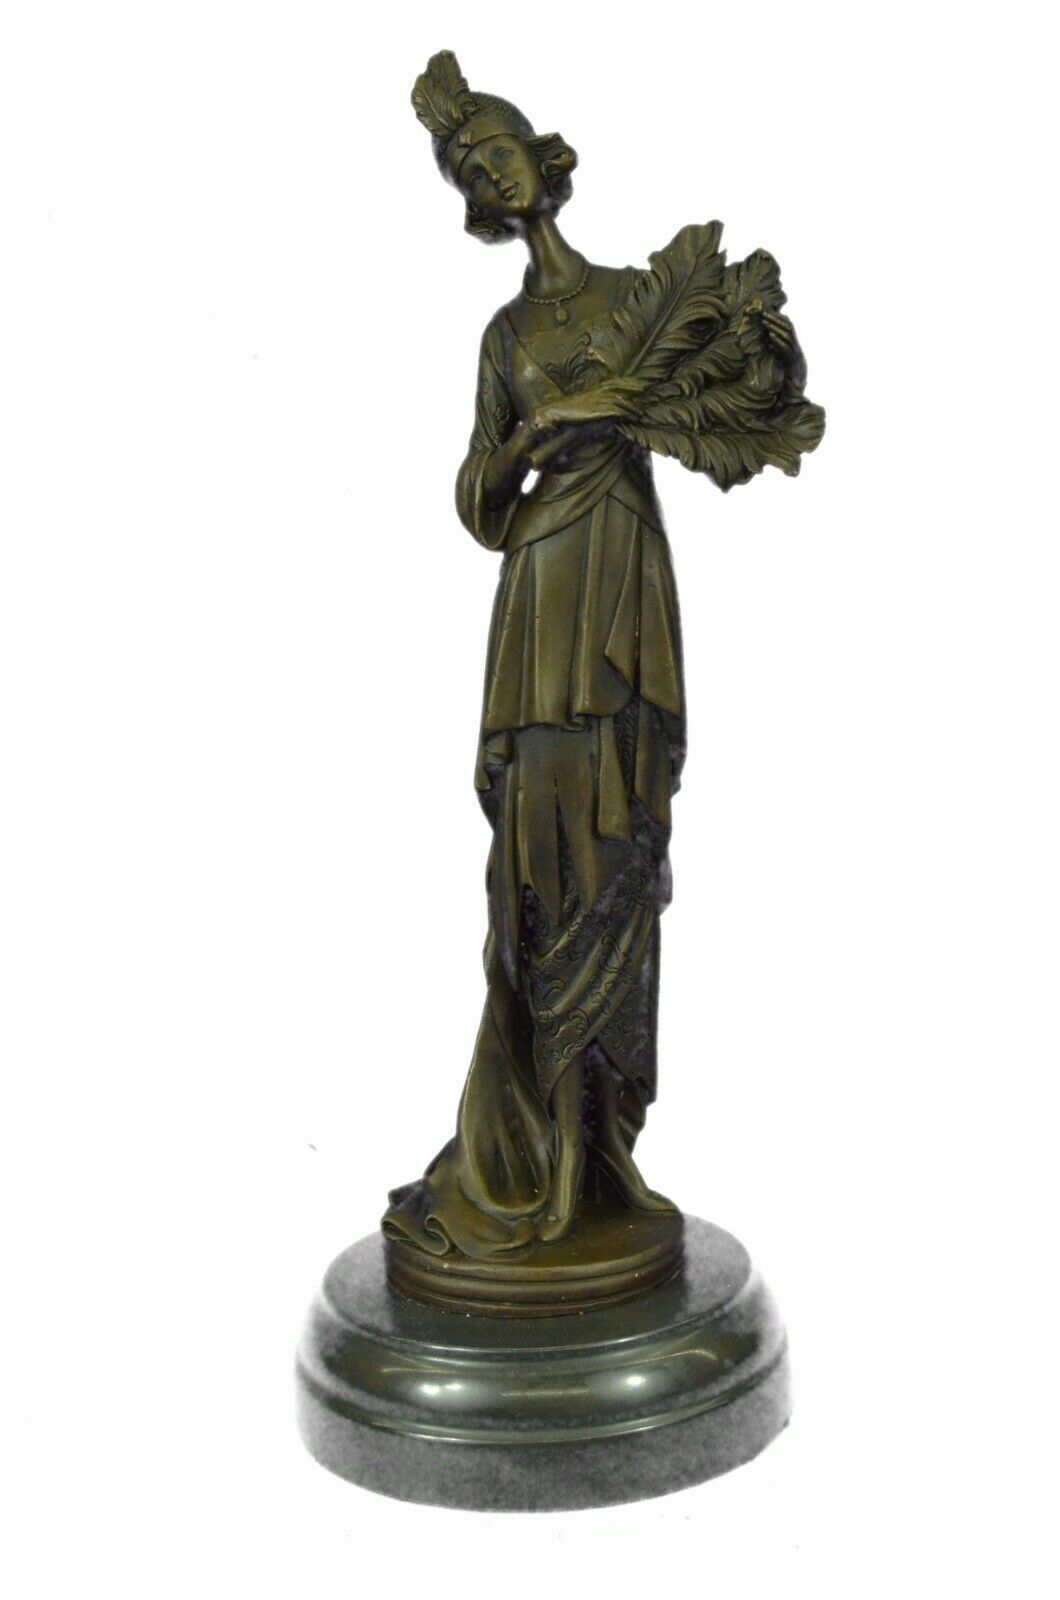 Signed Original Kassin 1920 Art Deco Style Woman Bronze Sculpture Figurine Sale